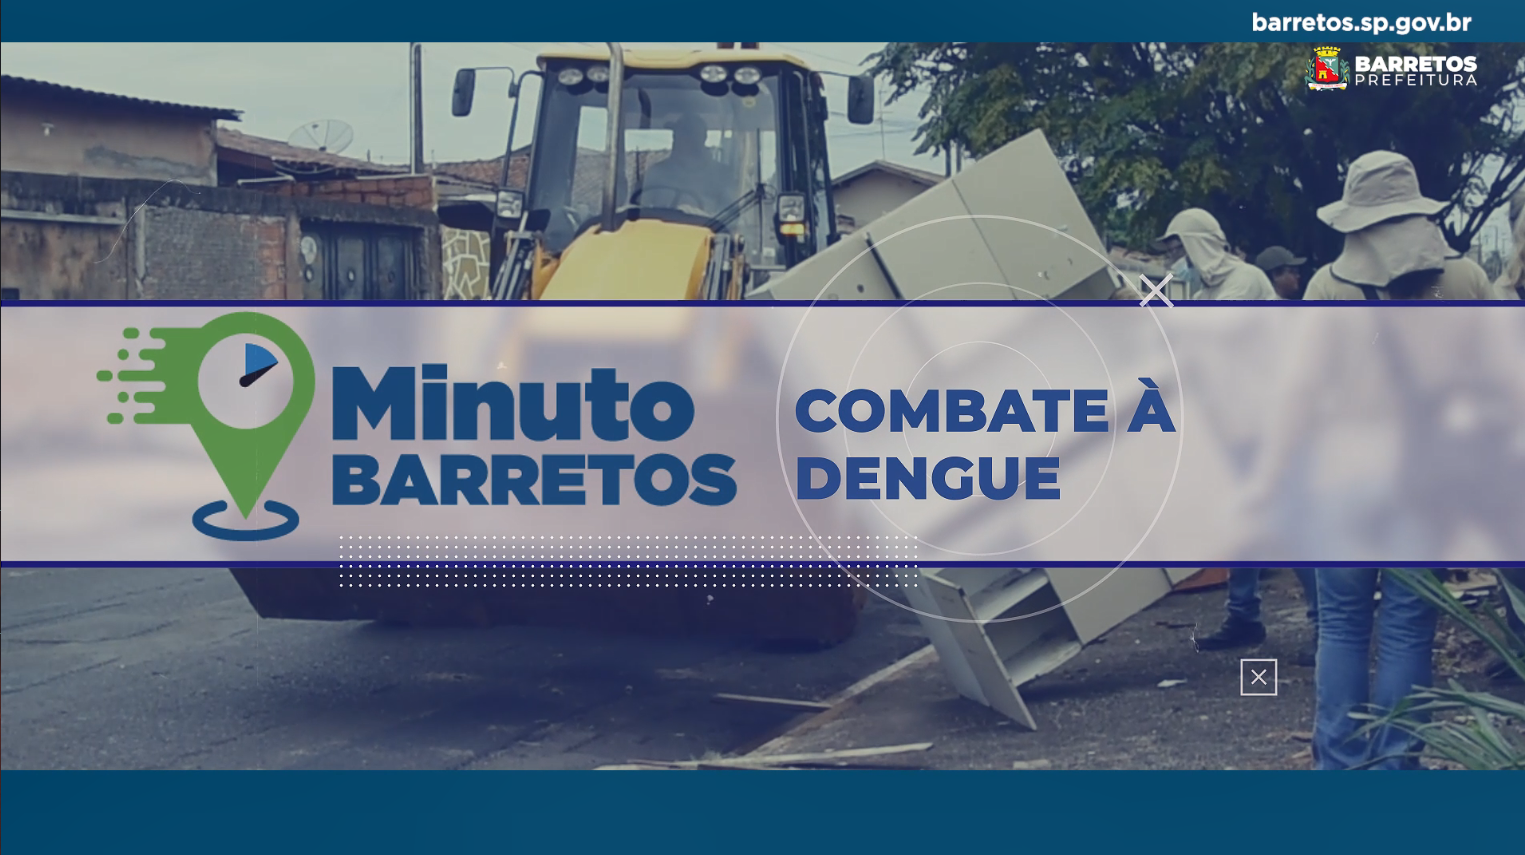 Minuto Barretos: Combate à Dengue